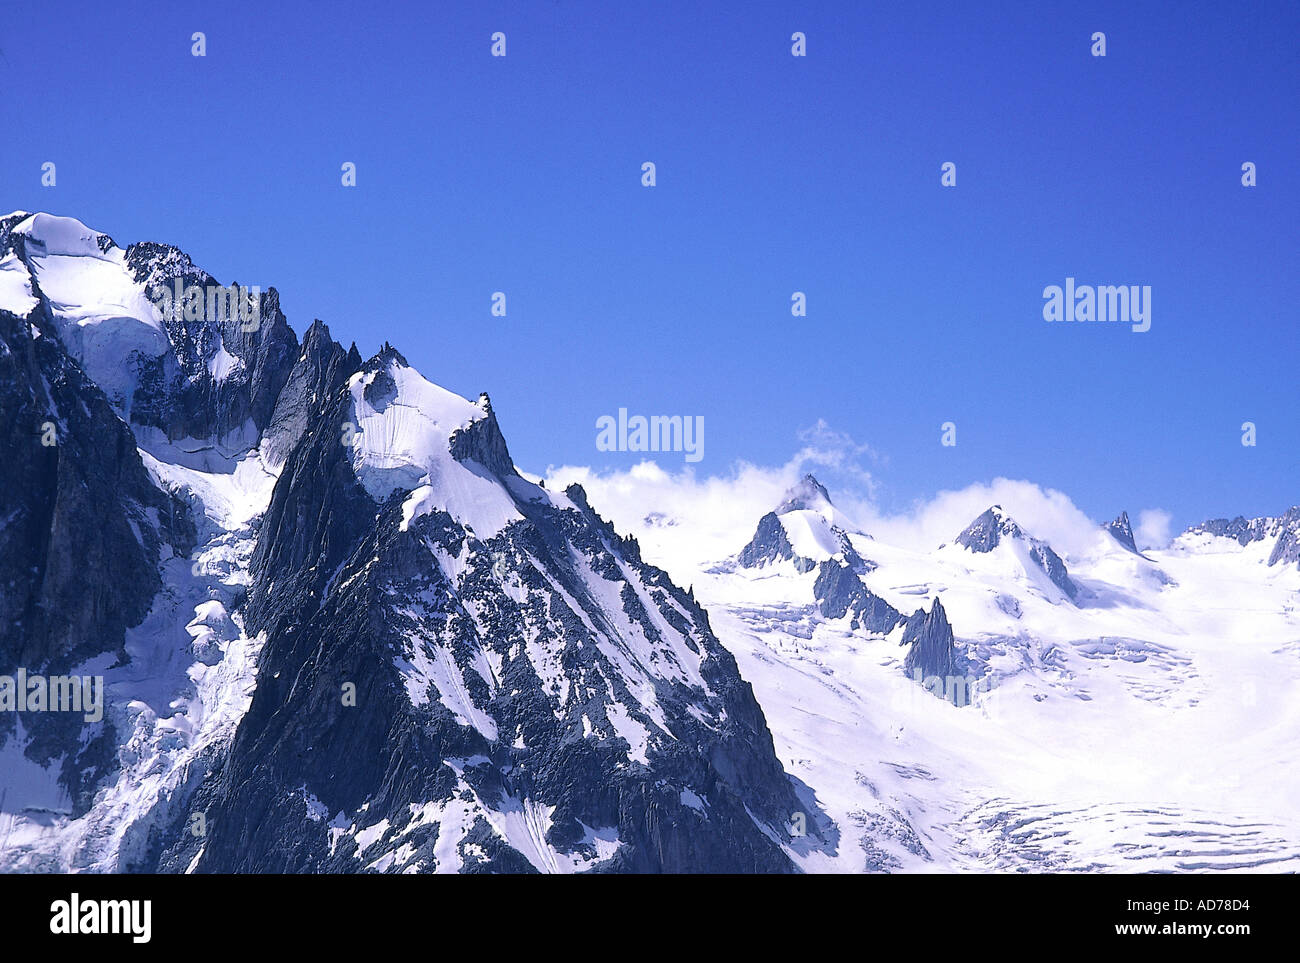 FRANCE ALPES EN HIVER MONT BLANC versant de montagne avec des rochers noirs Banque D'Images